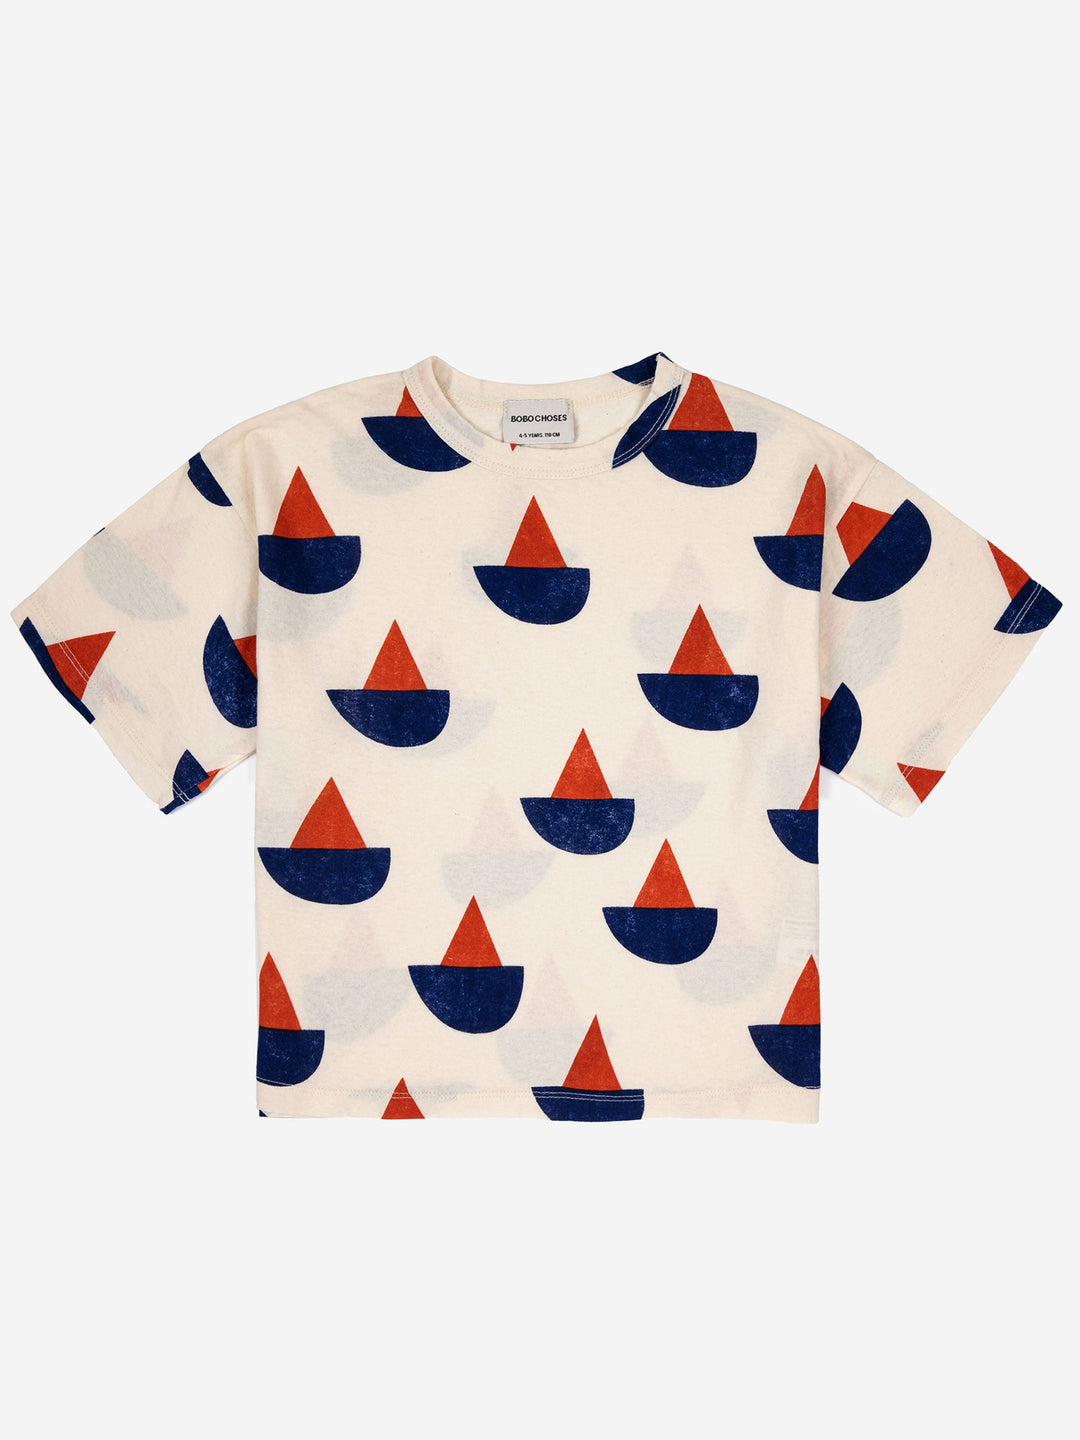 Sail Boat Short Sleeve Tshirt by Bobo Choses